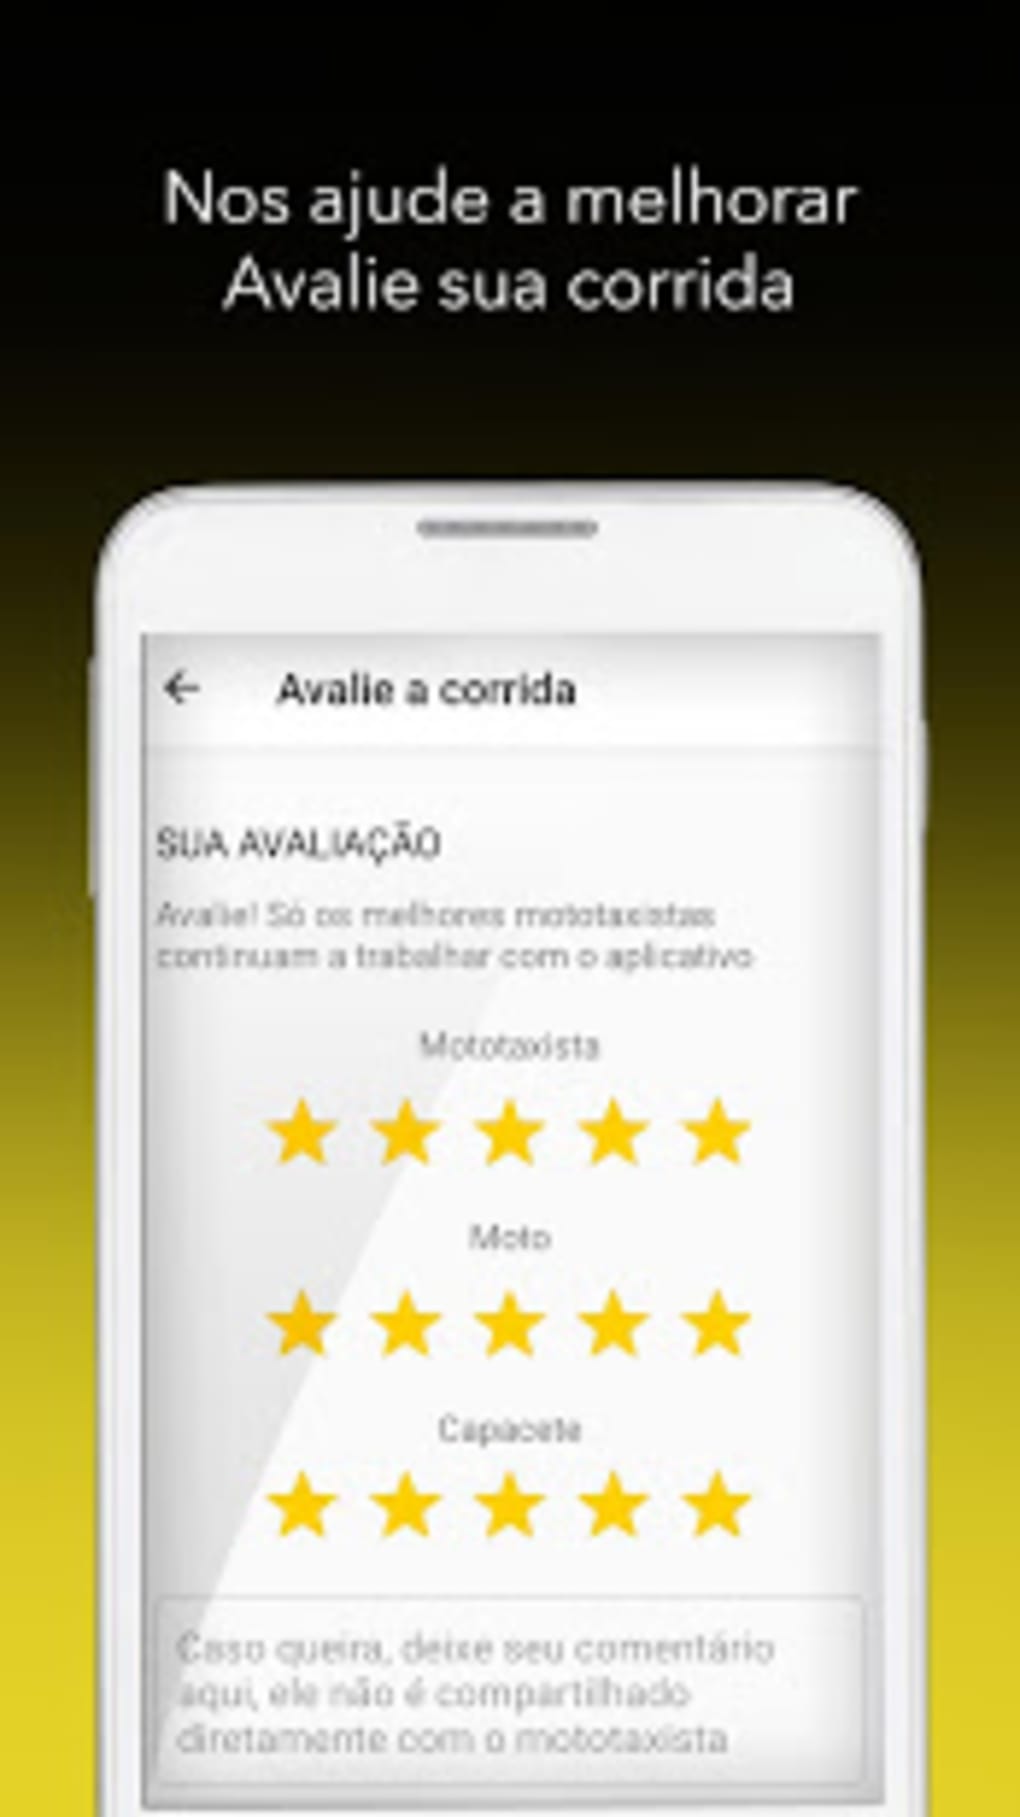 TOP 360 - Mototaxistas – Apps no Google Play